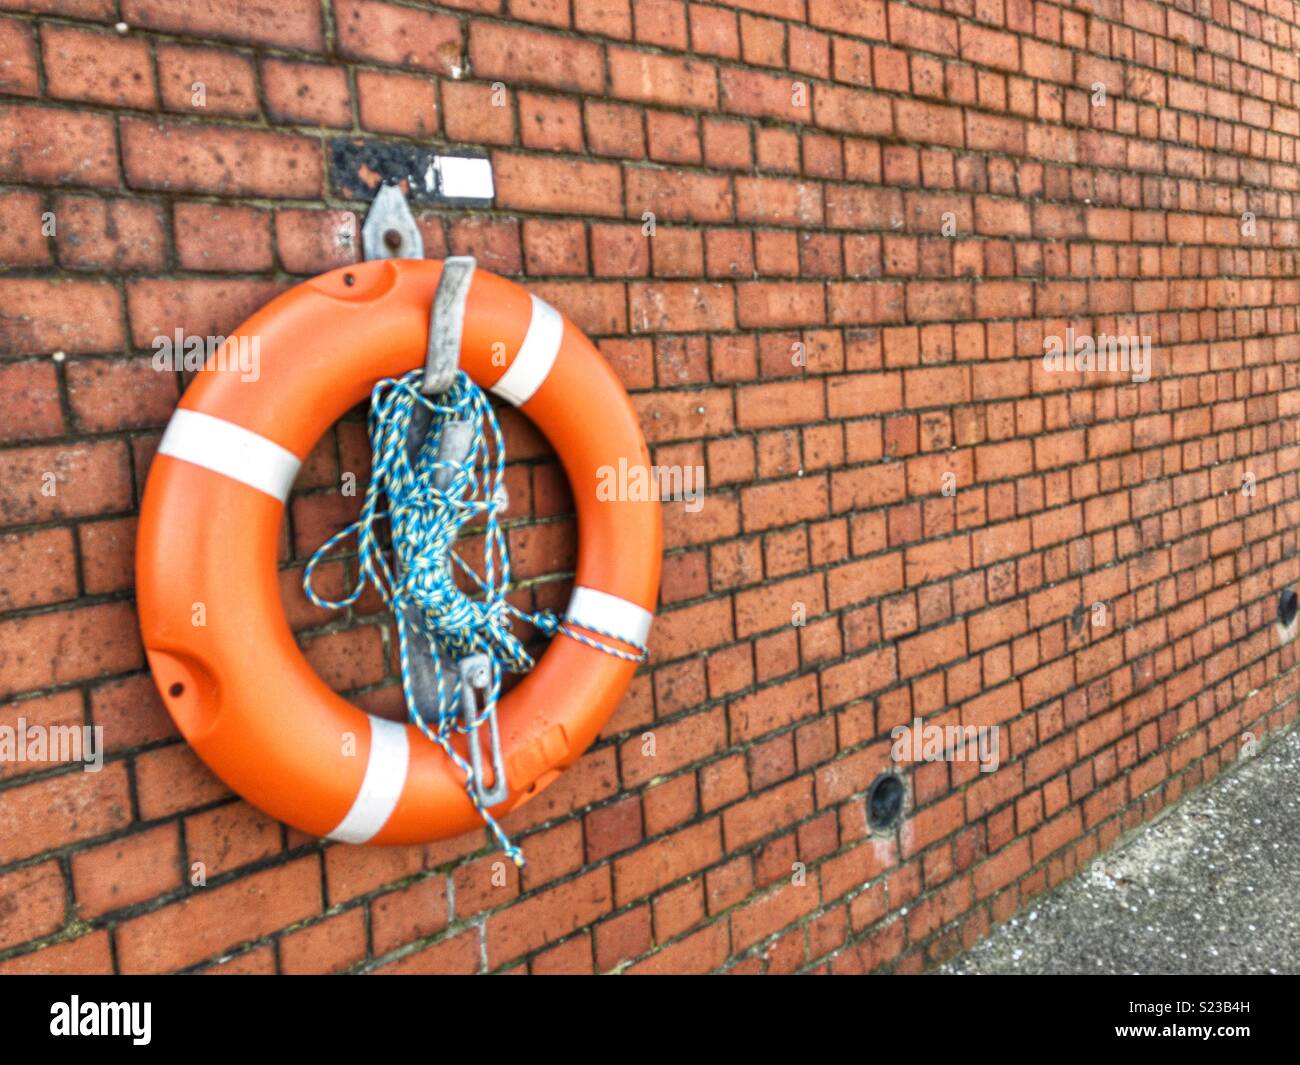 Bouée Orange avec corde bleu et blanc, monté sur un mur de briques par la rivière Mersey, Wallasey, Wirral, Angleterre Banque D'Images